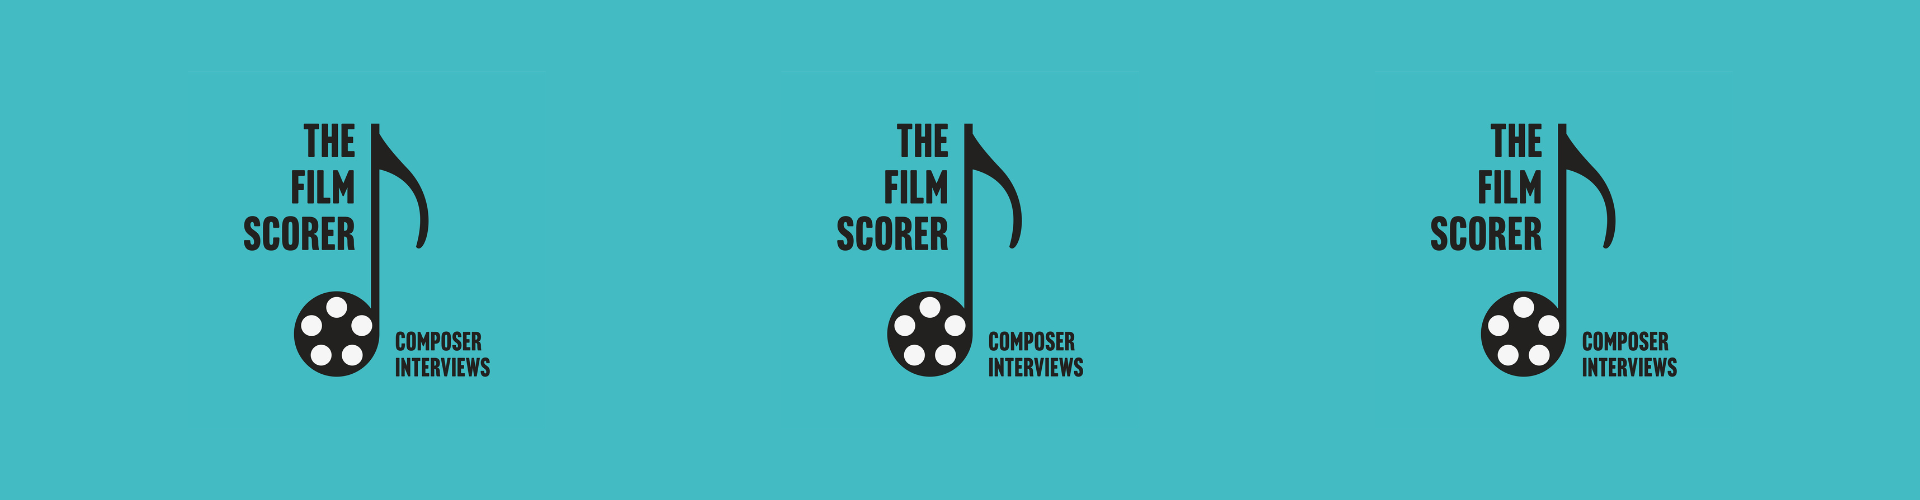 The Film Scorer